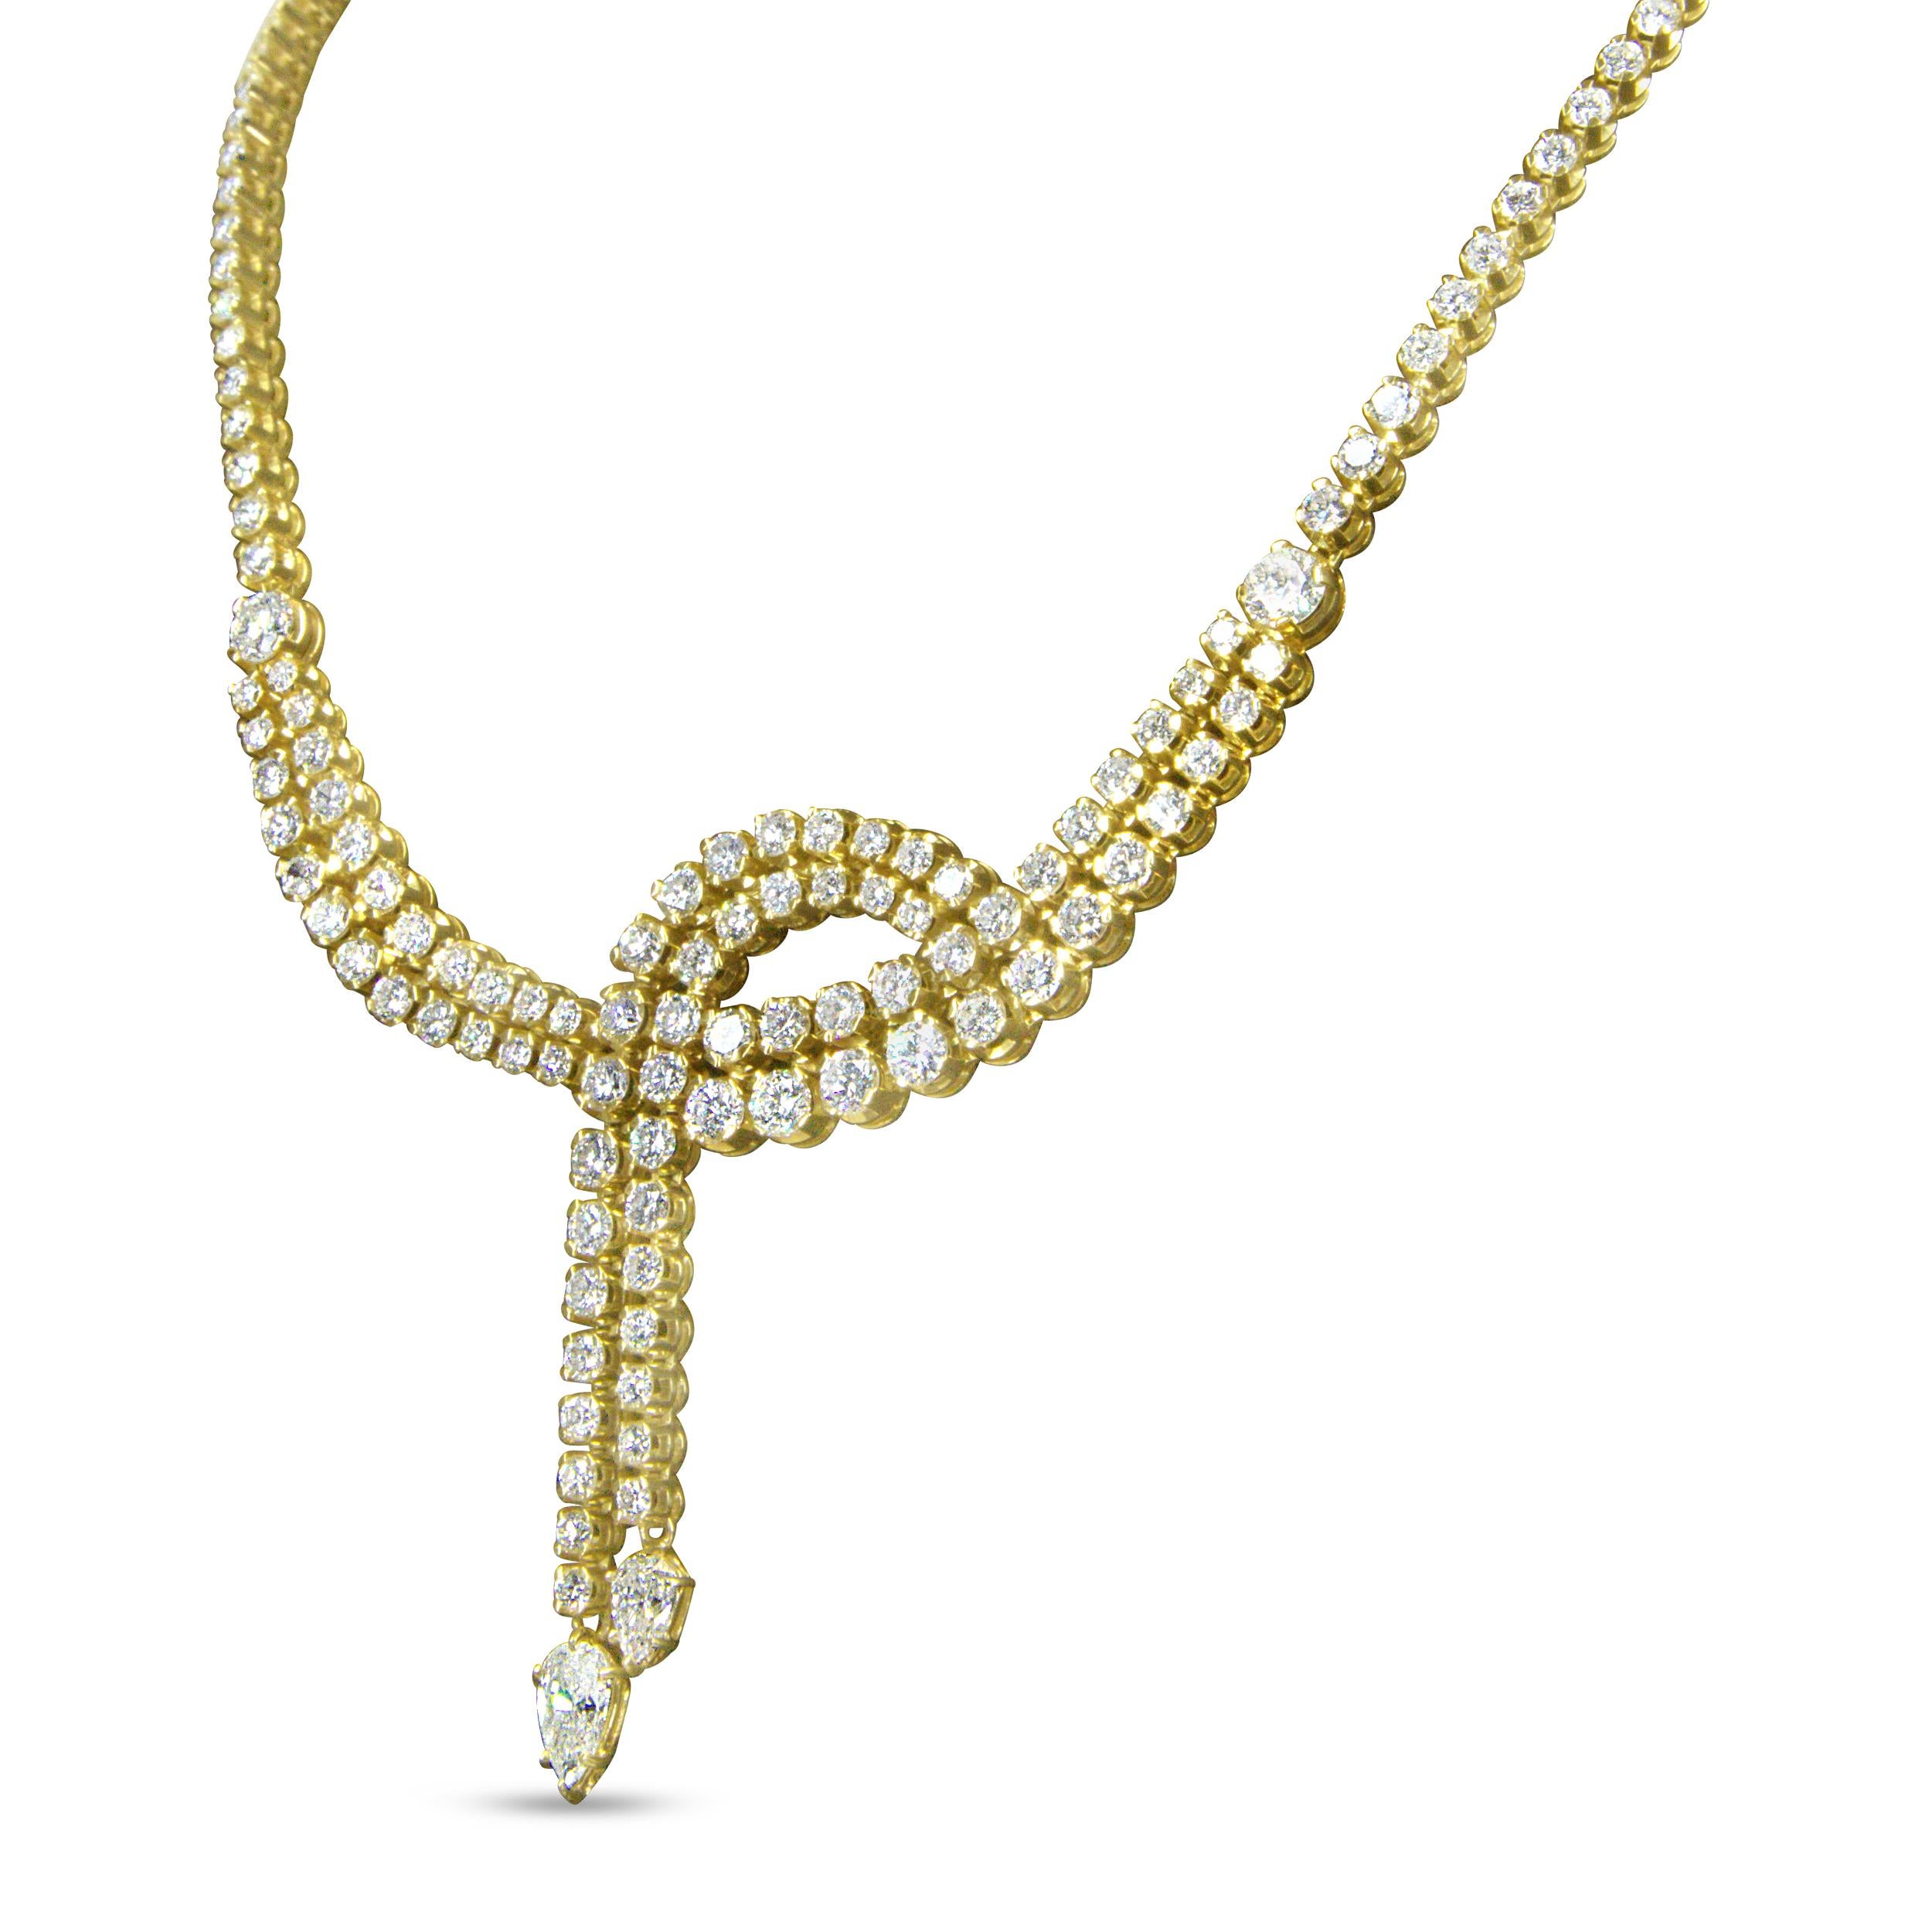 Verschönern Sie Ihren Hals mit leuchtenden Reihen luxuriöser natürlicher Diamanten! Diese Lariat Tennis-Halskette ist ein absolut eindrucksvolles Design, dauerhaft elegant und leuchtend funkelnd mit über 200 Diamanten, die bei jedem Schritt glitzern